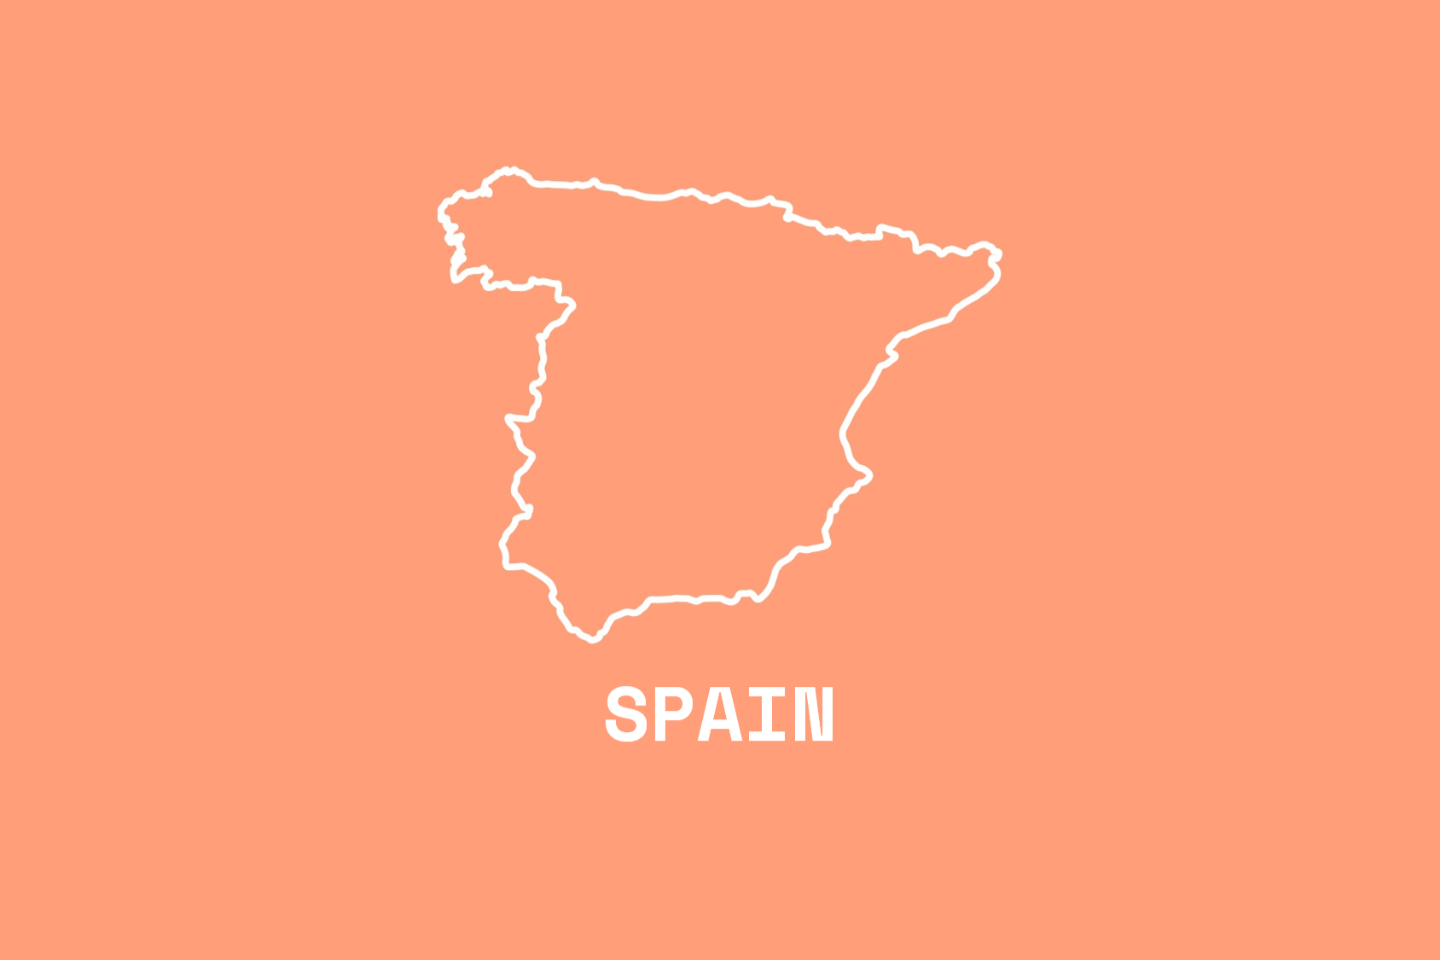 In Spain